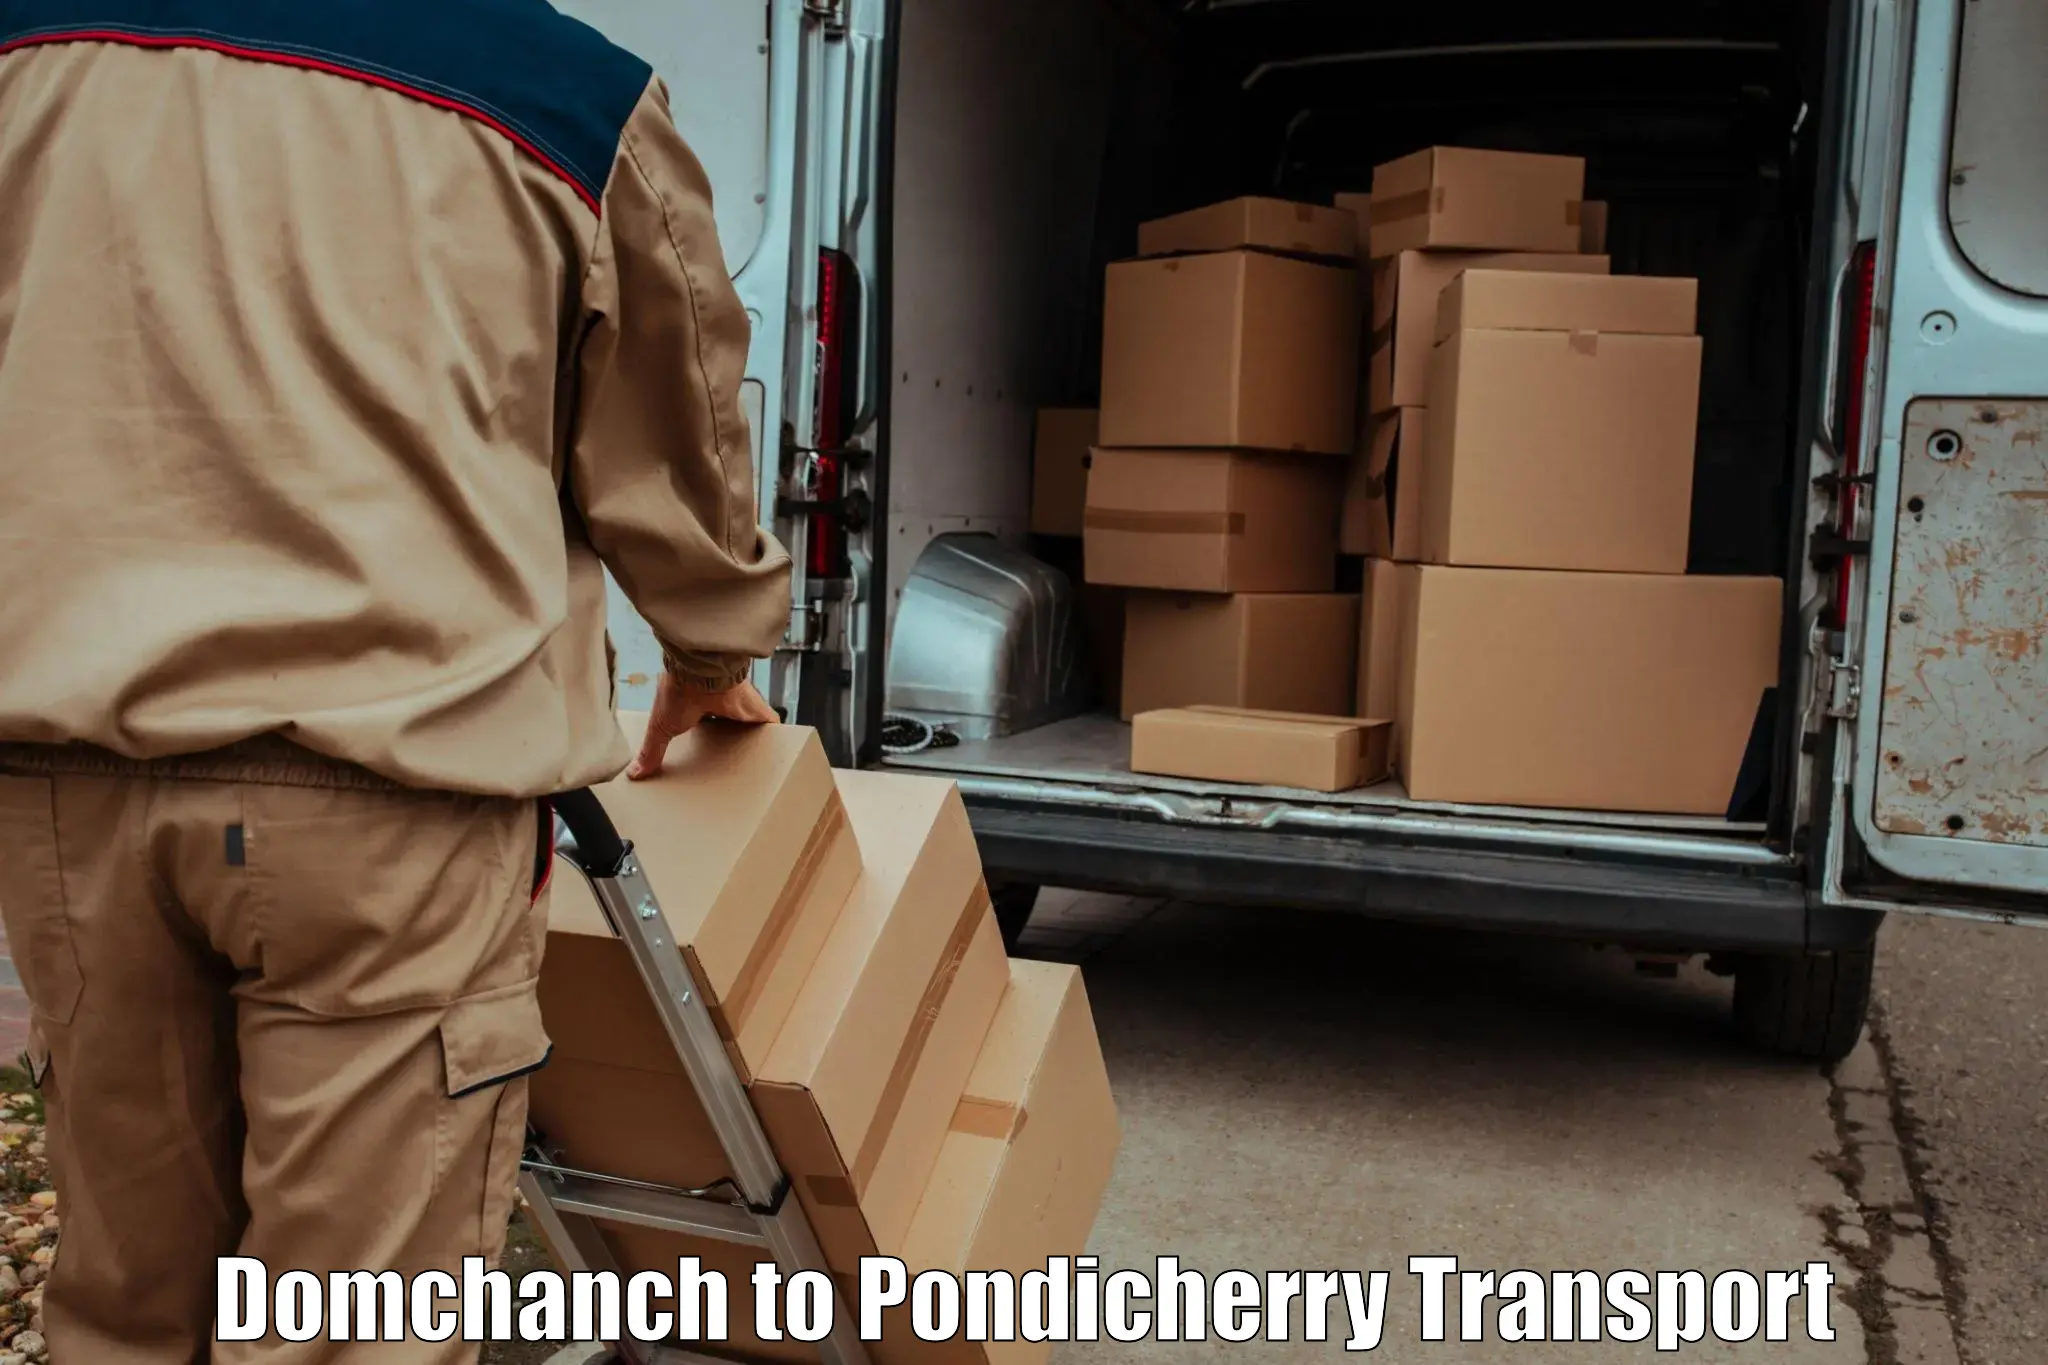 Road transport online services Domchanch to Pondicherry